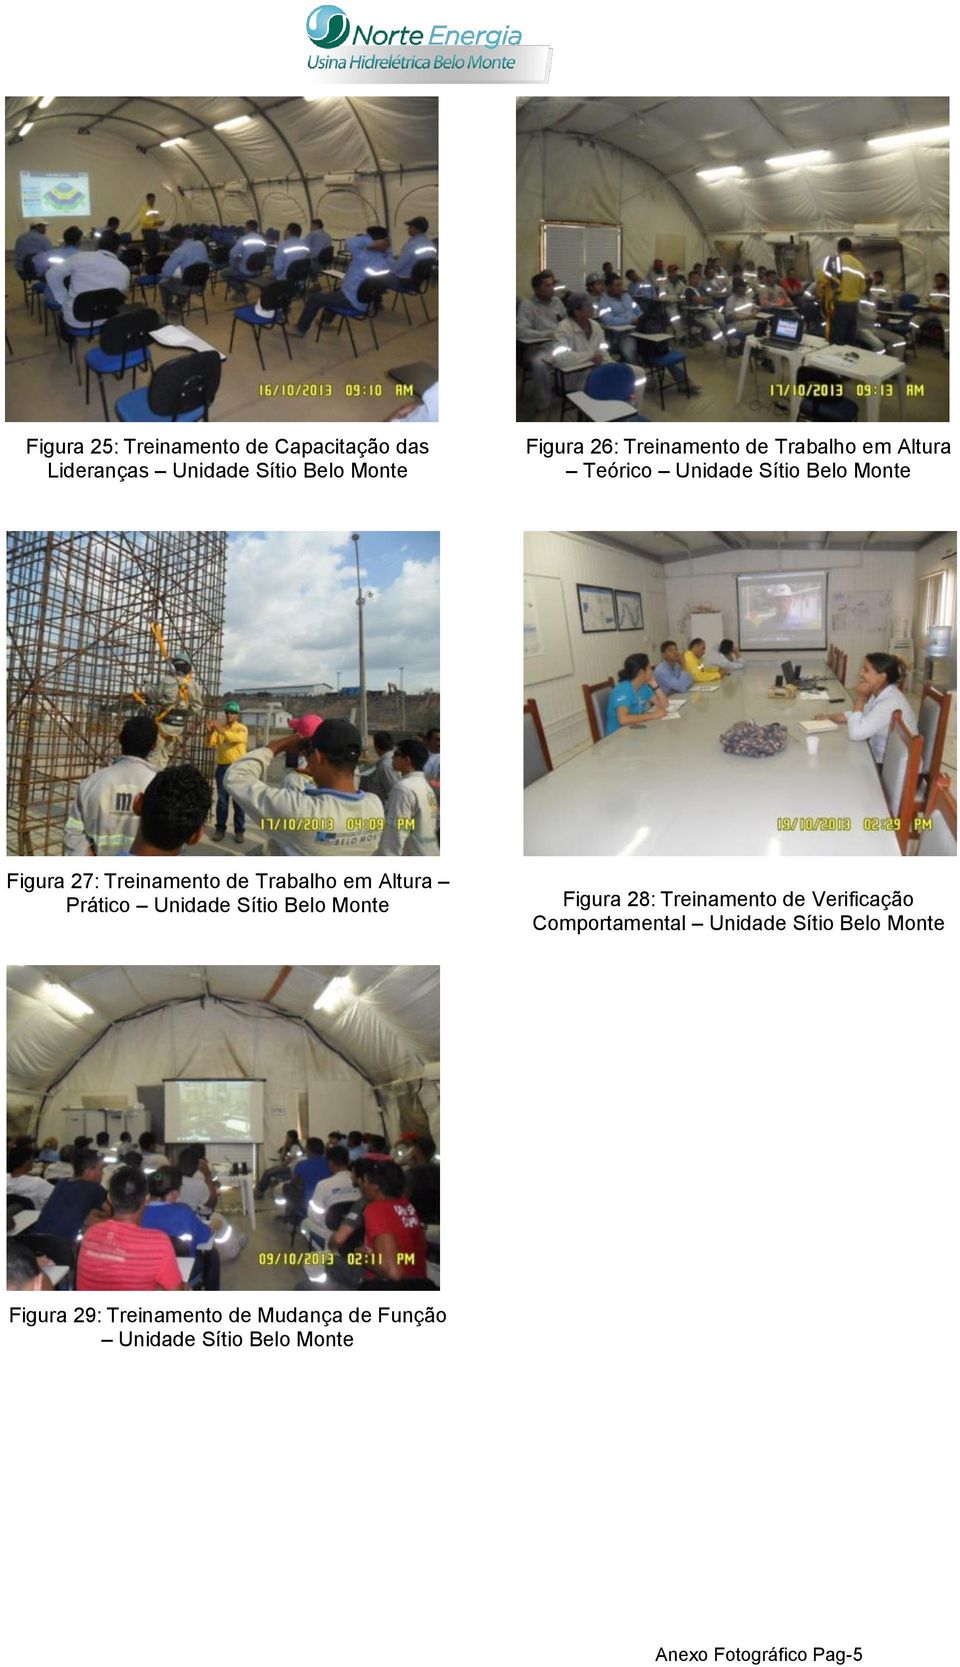 Prático Unidade Sítio Belo Monte Figura 28: Treinamento de Verificação Comportamental Unidade Sítio